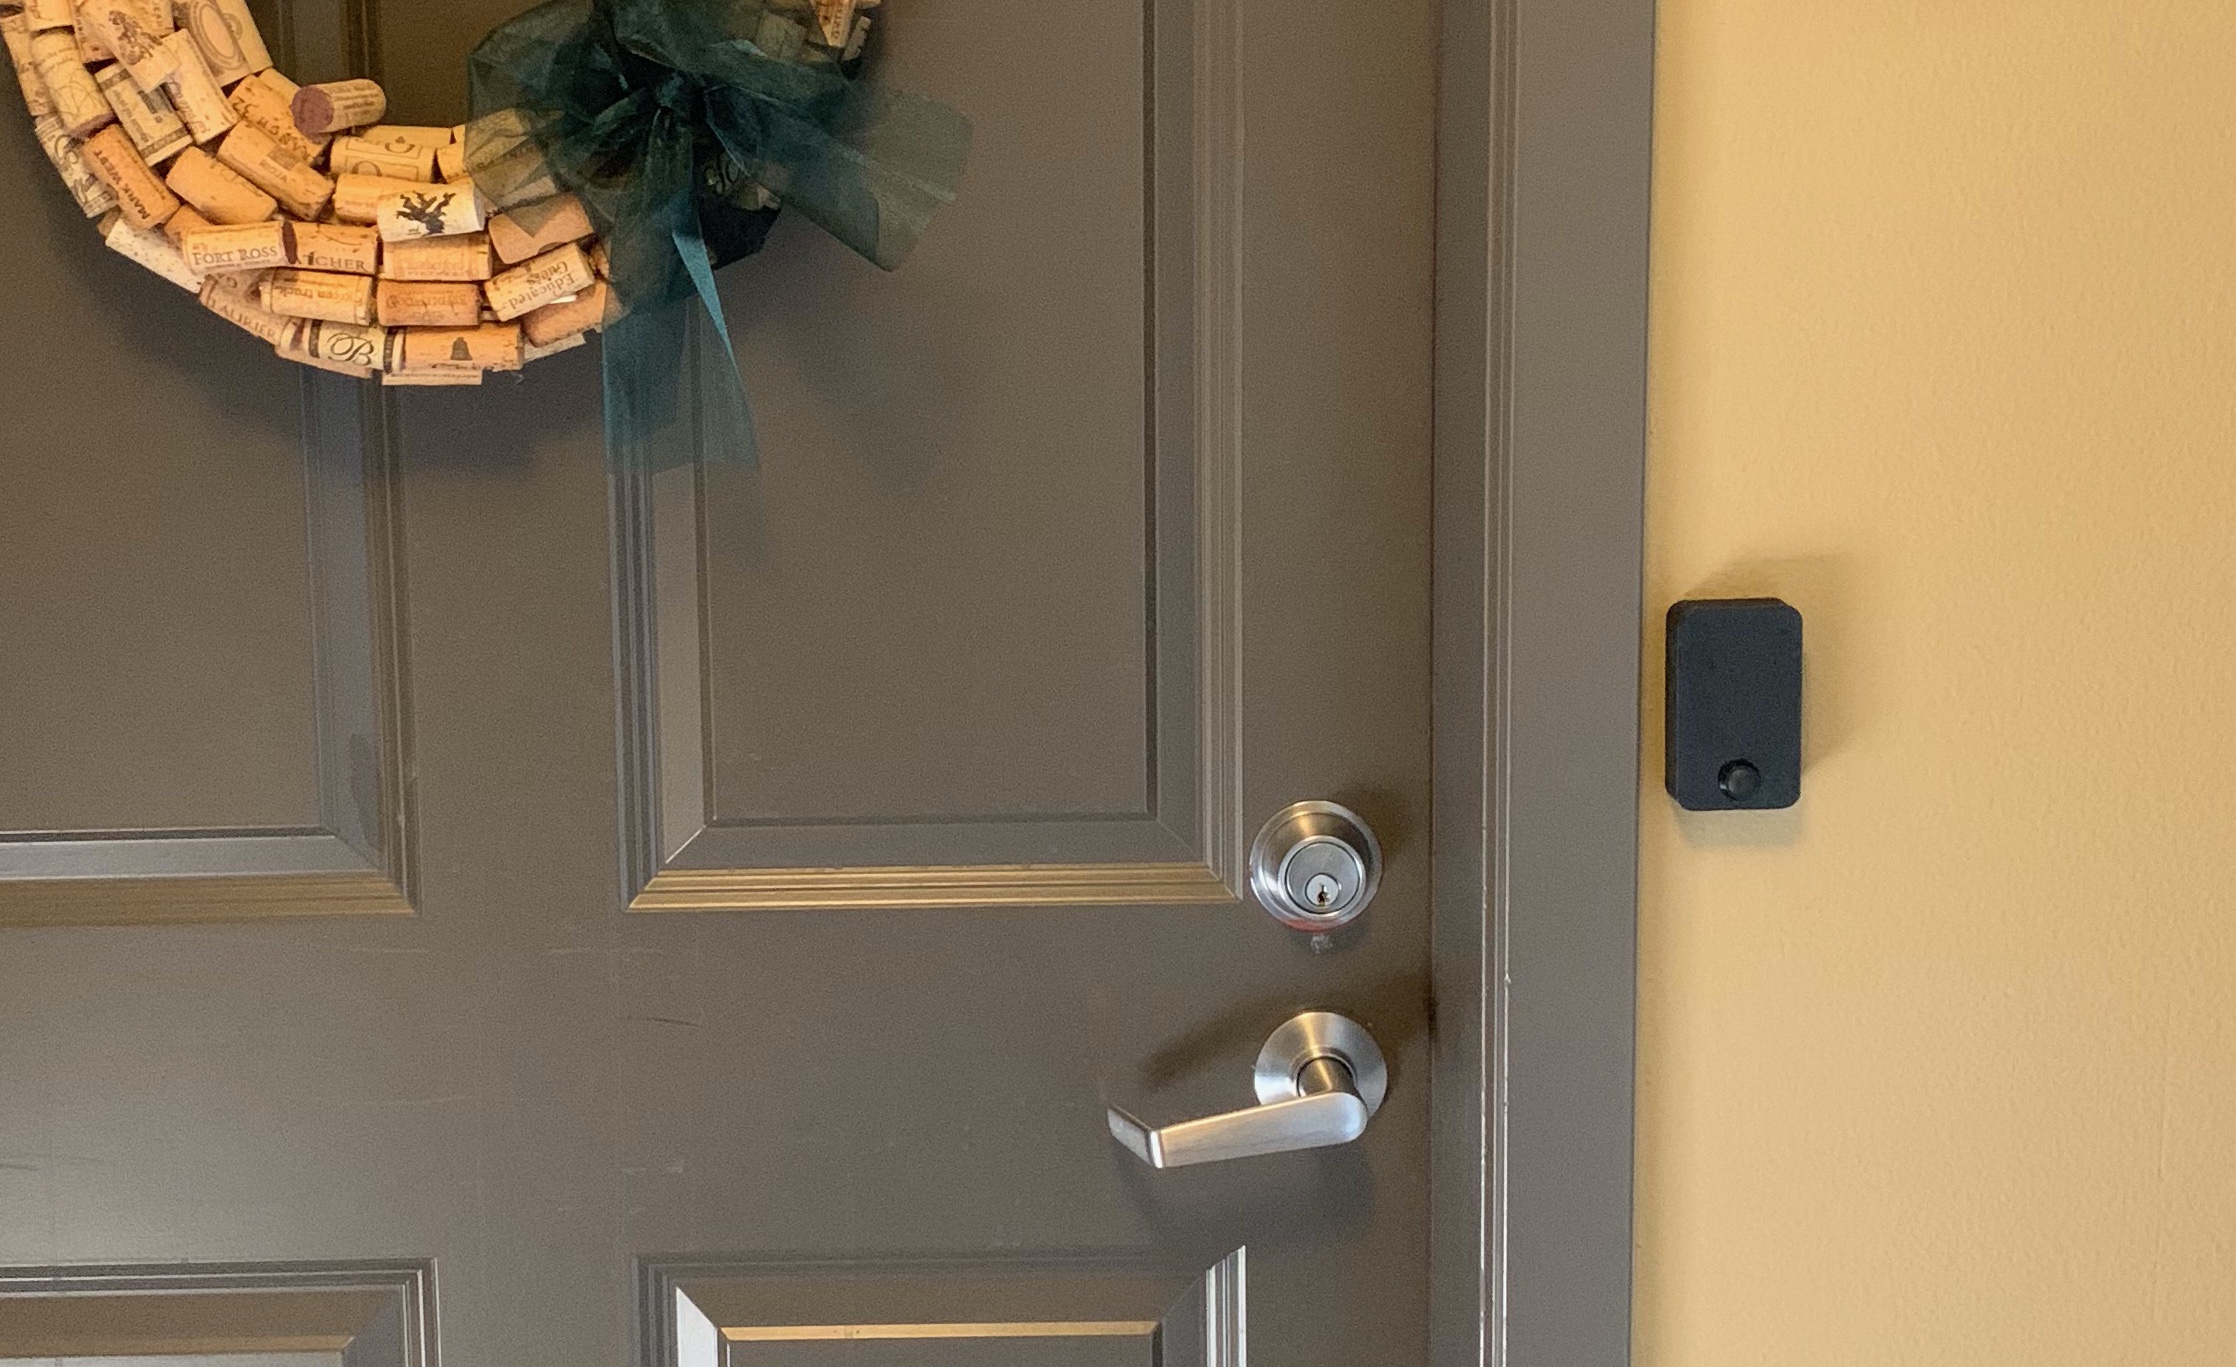 doorbell installed next to door